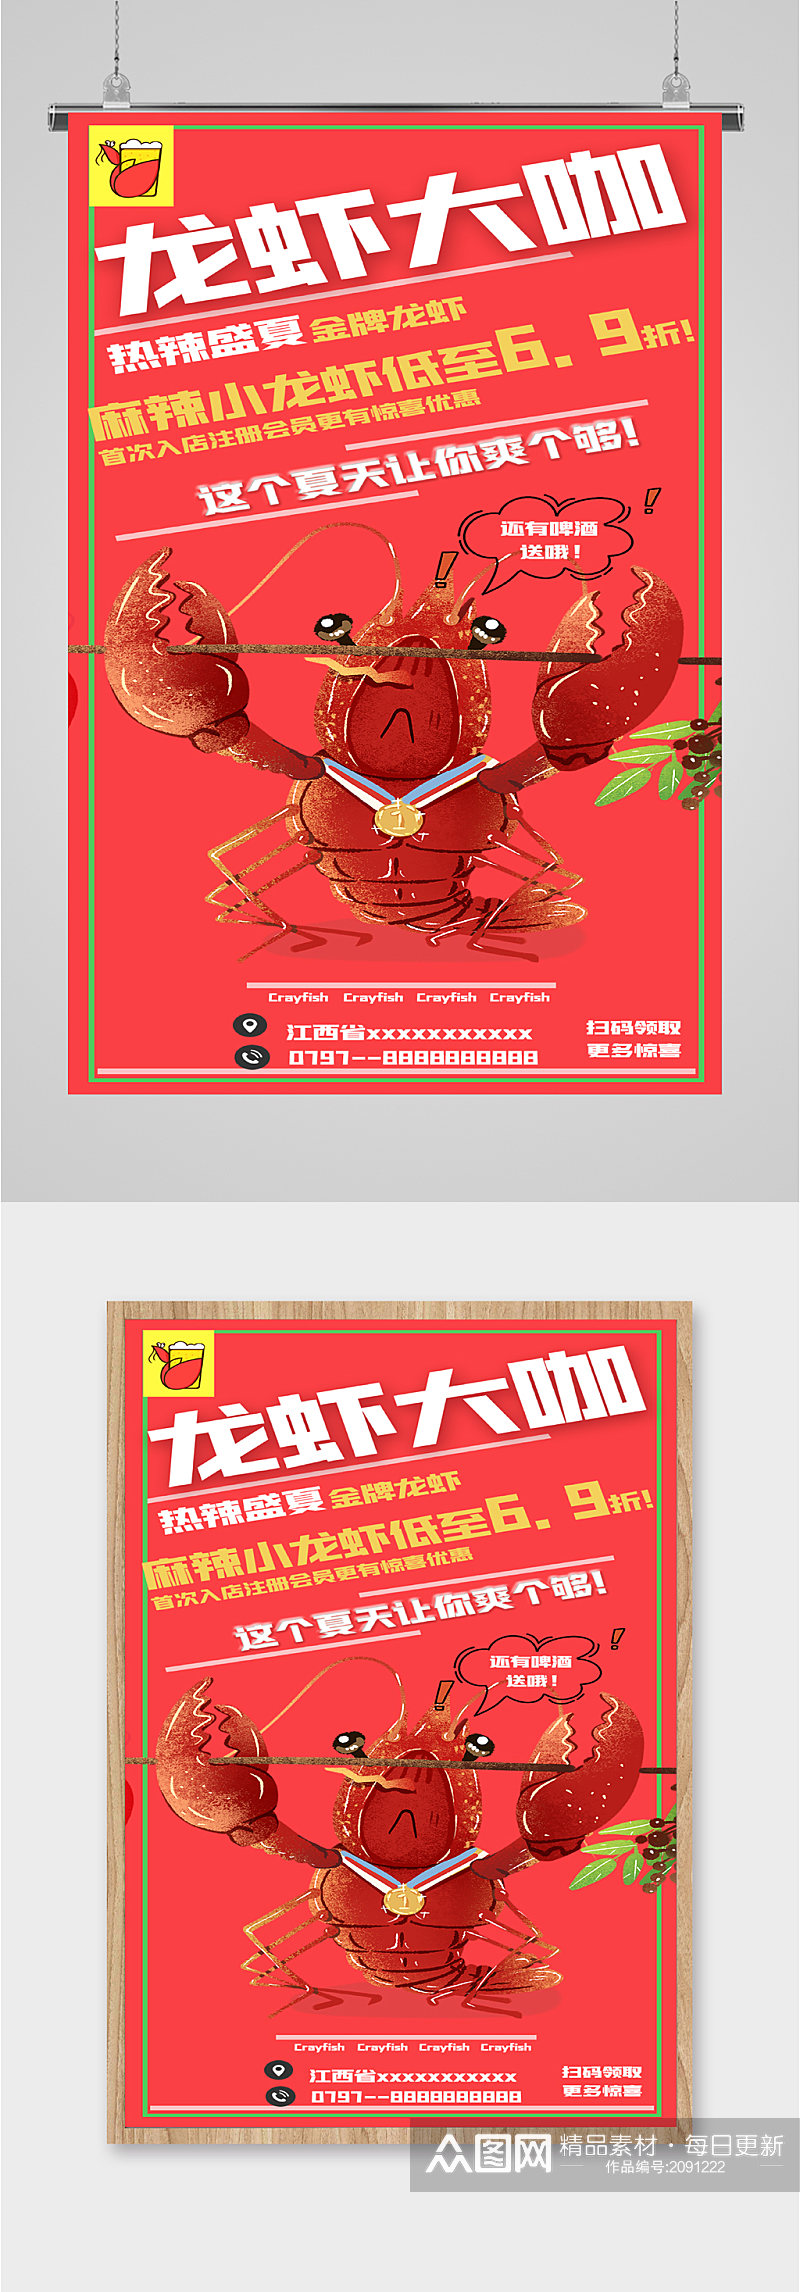 龙虾大咖小龙虾美食优惠海报素材